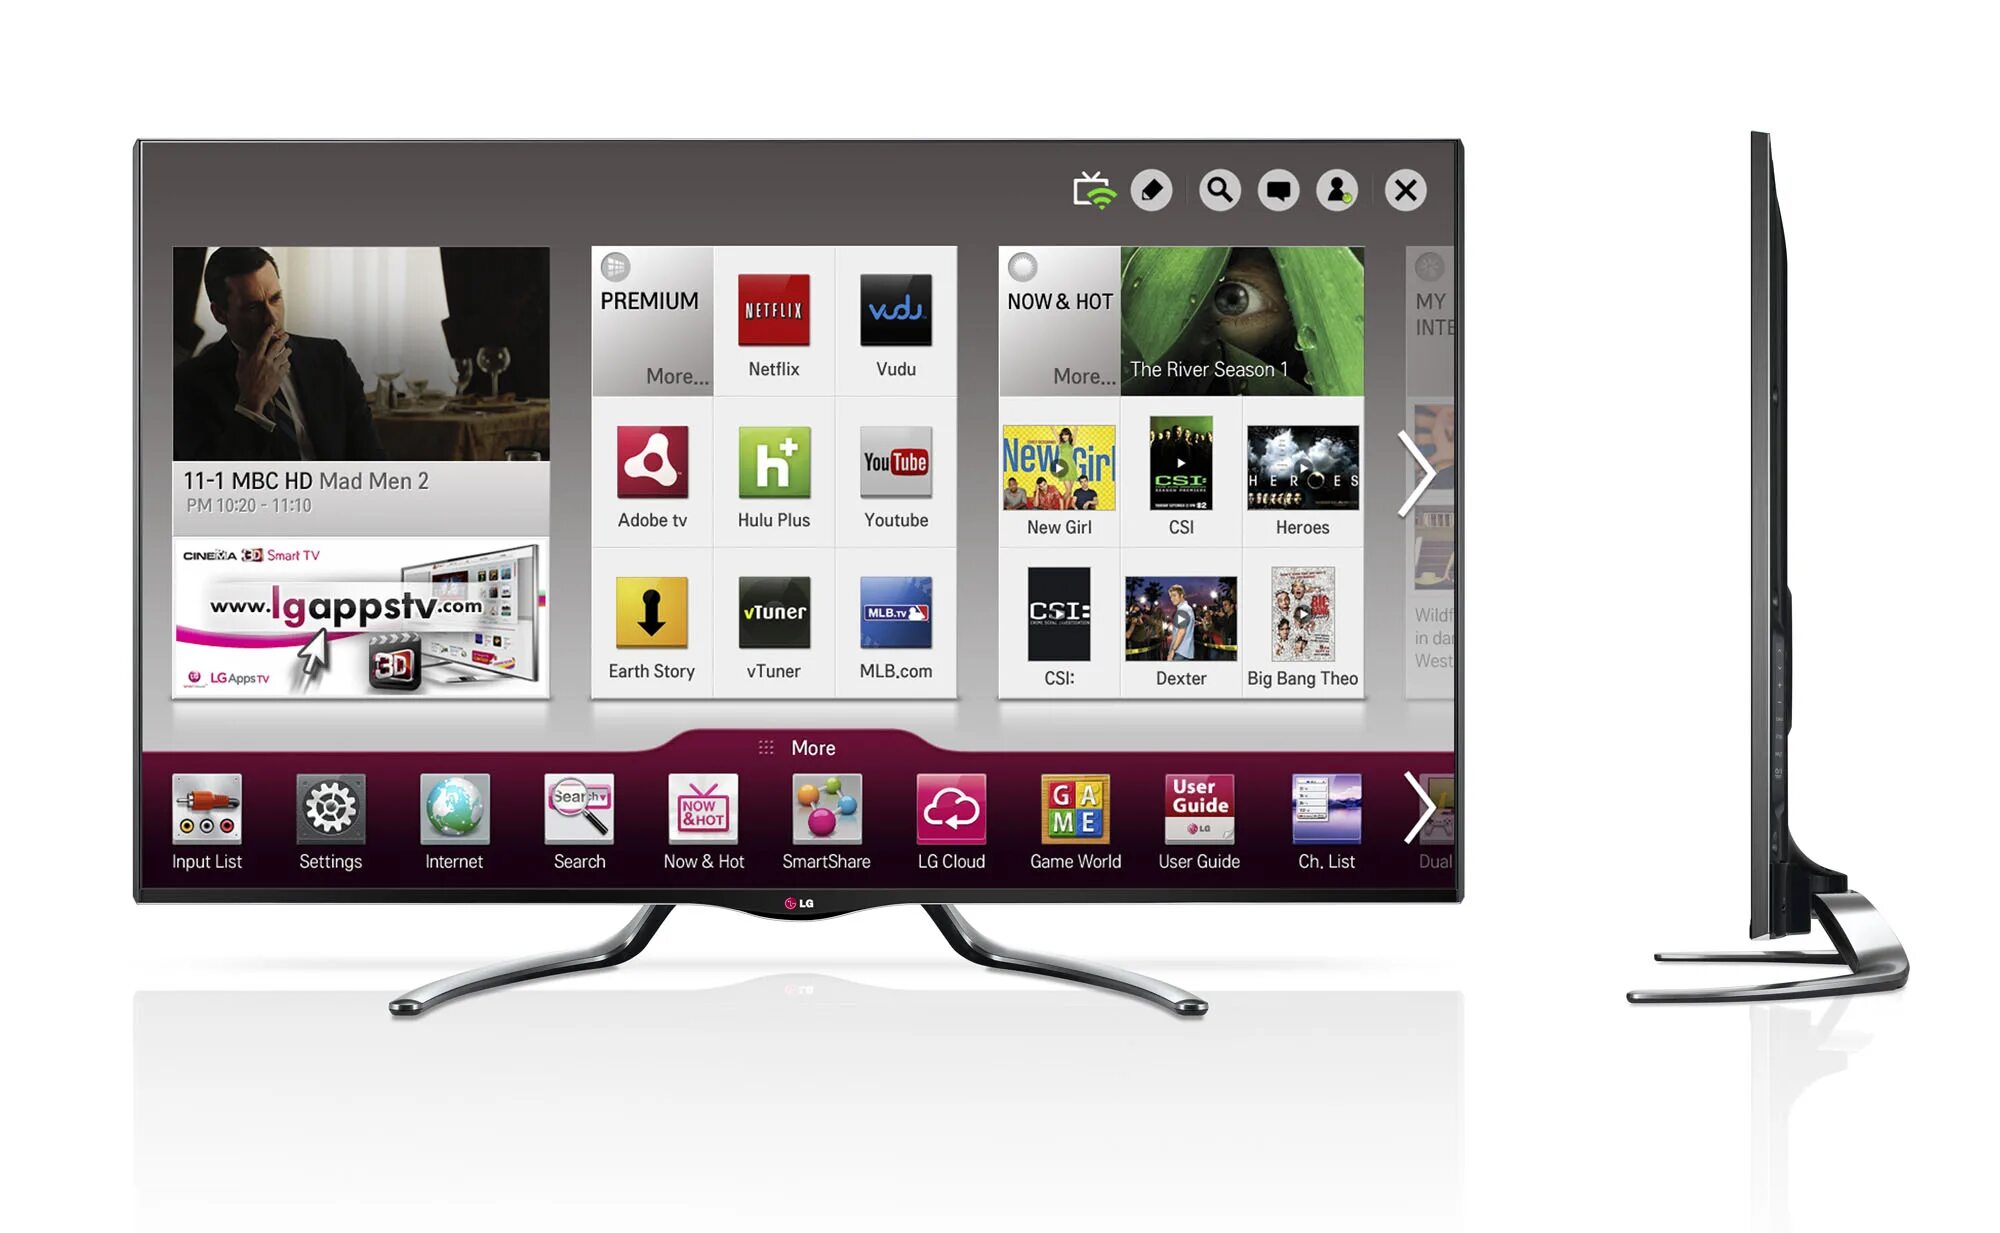 LG Smart TV 2013. 32 Smart TV LG 2013. Телевизор LG Smart TV 2013 года. Телевизор LG 42 Smart TV. Последняя версия телевизора lg